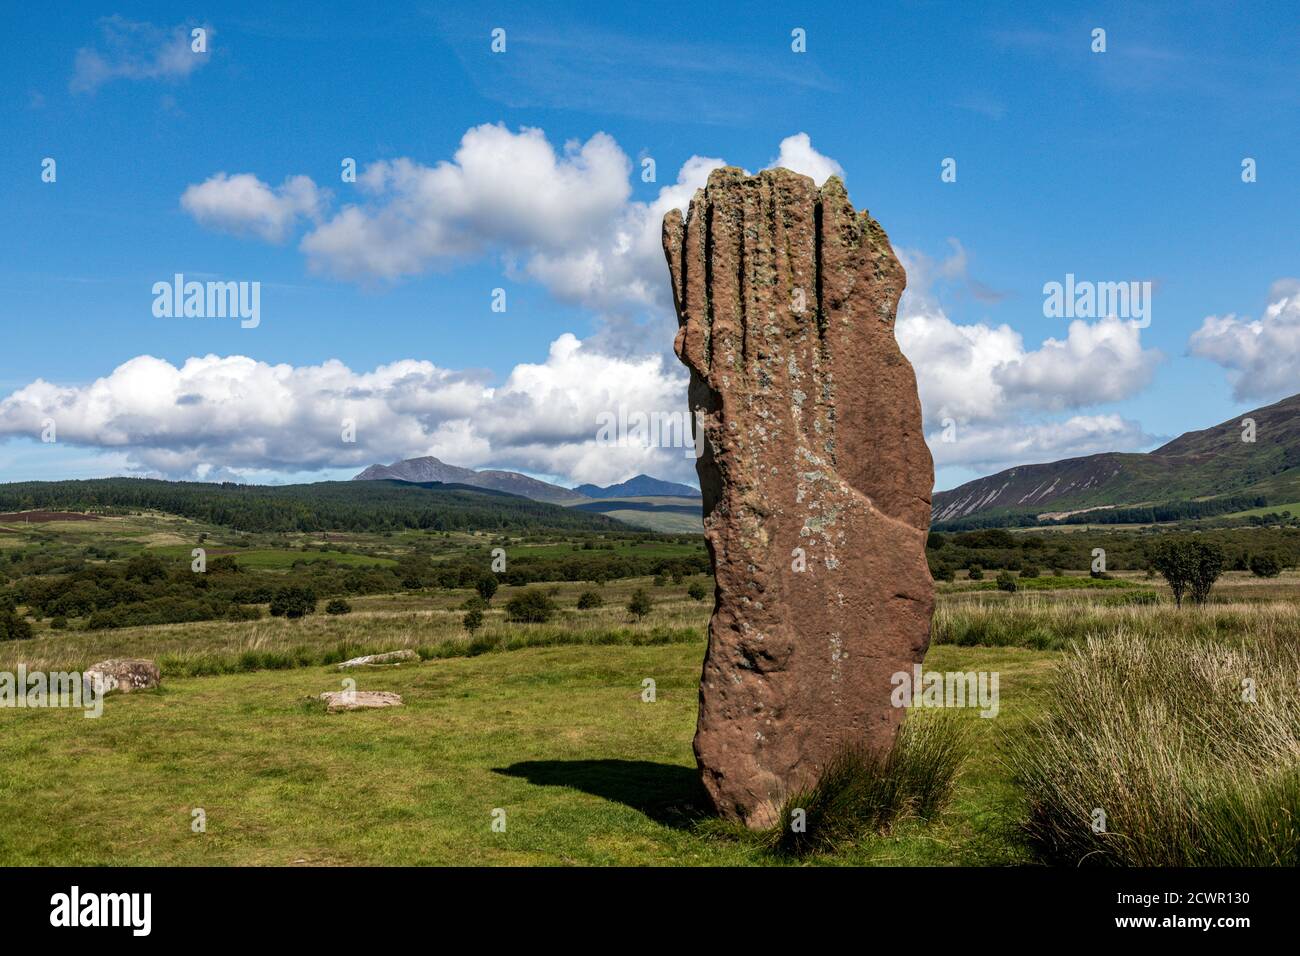 Machrie Moor Standing Stones, Isle of Arran, Scotland, Uk Stock Photo